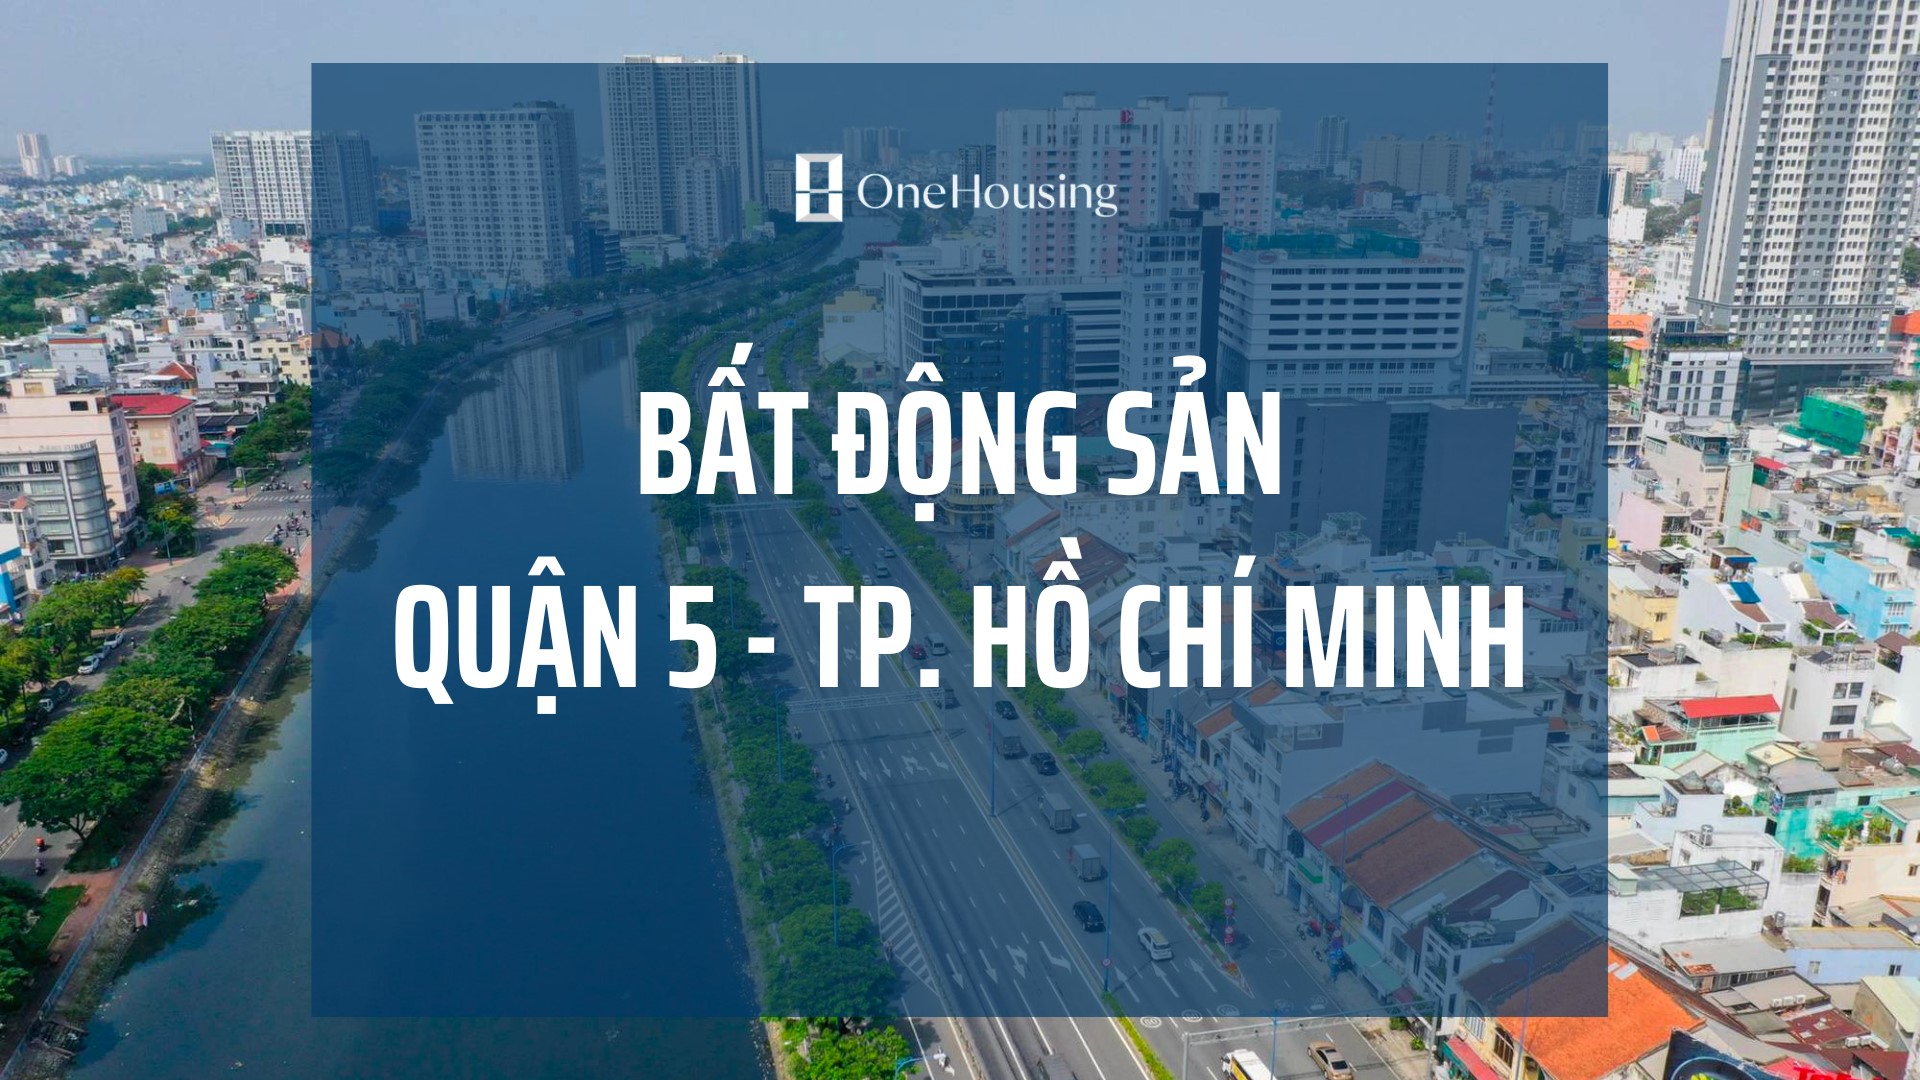 gia-chung-cu-quan-5-dien-tich-150-200m2-dang-ban-bao-nhieu-1m2-onehousing-1